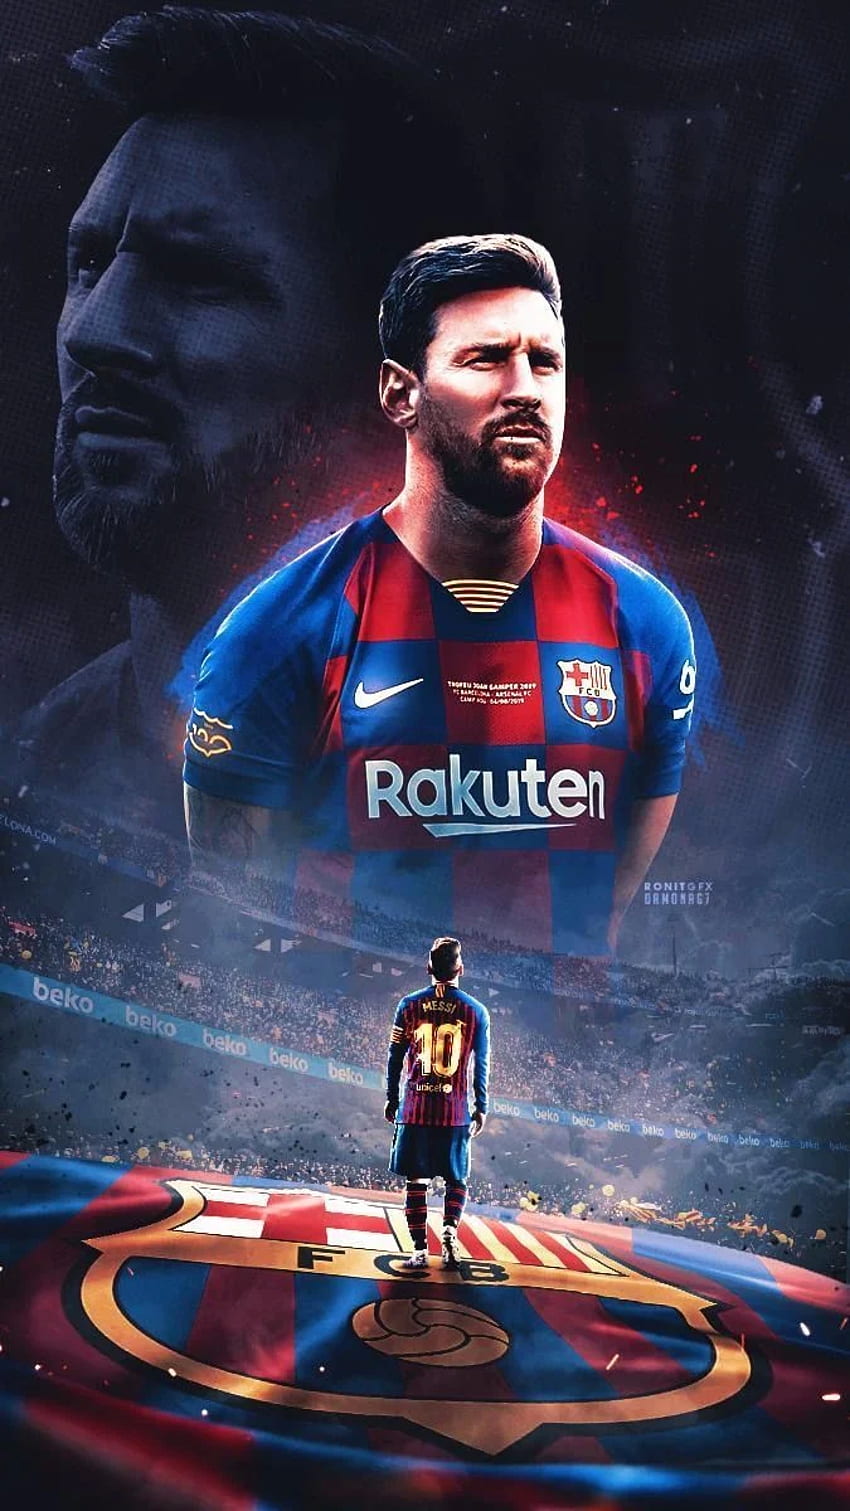 Thiết bị của bạn sẽ trở nên tuyệt đẹp với hình nền Messi cho iPhone. Đừng bỏ lỡ bất kỳ cơ hội nào để thể hiện tình yêu của bạn dành cho một trong những cầu thủ vĩ đại nhất thế giới.